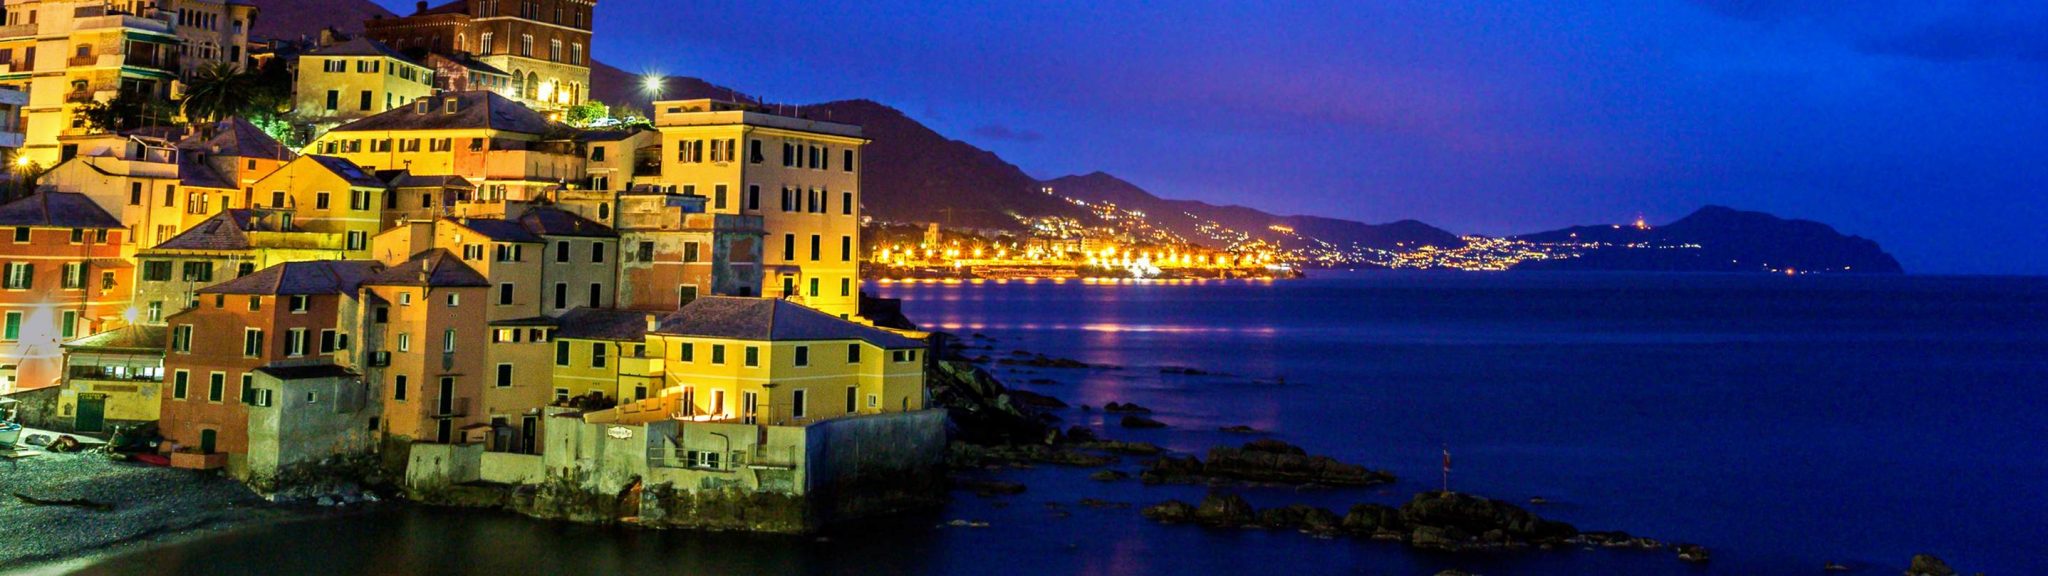 night-charter-Portofino-luxury-charter-4